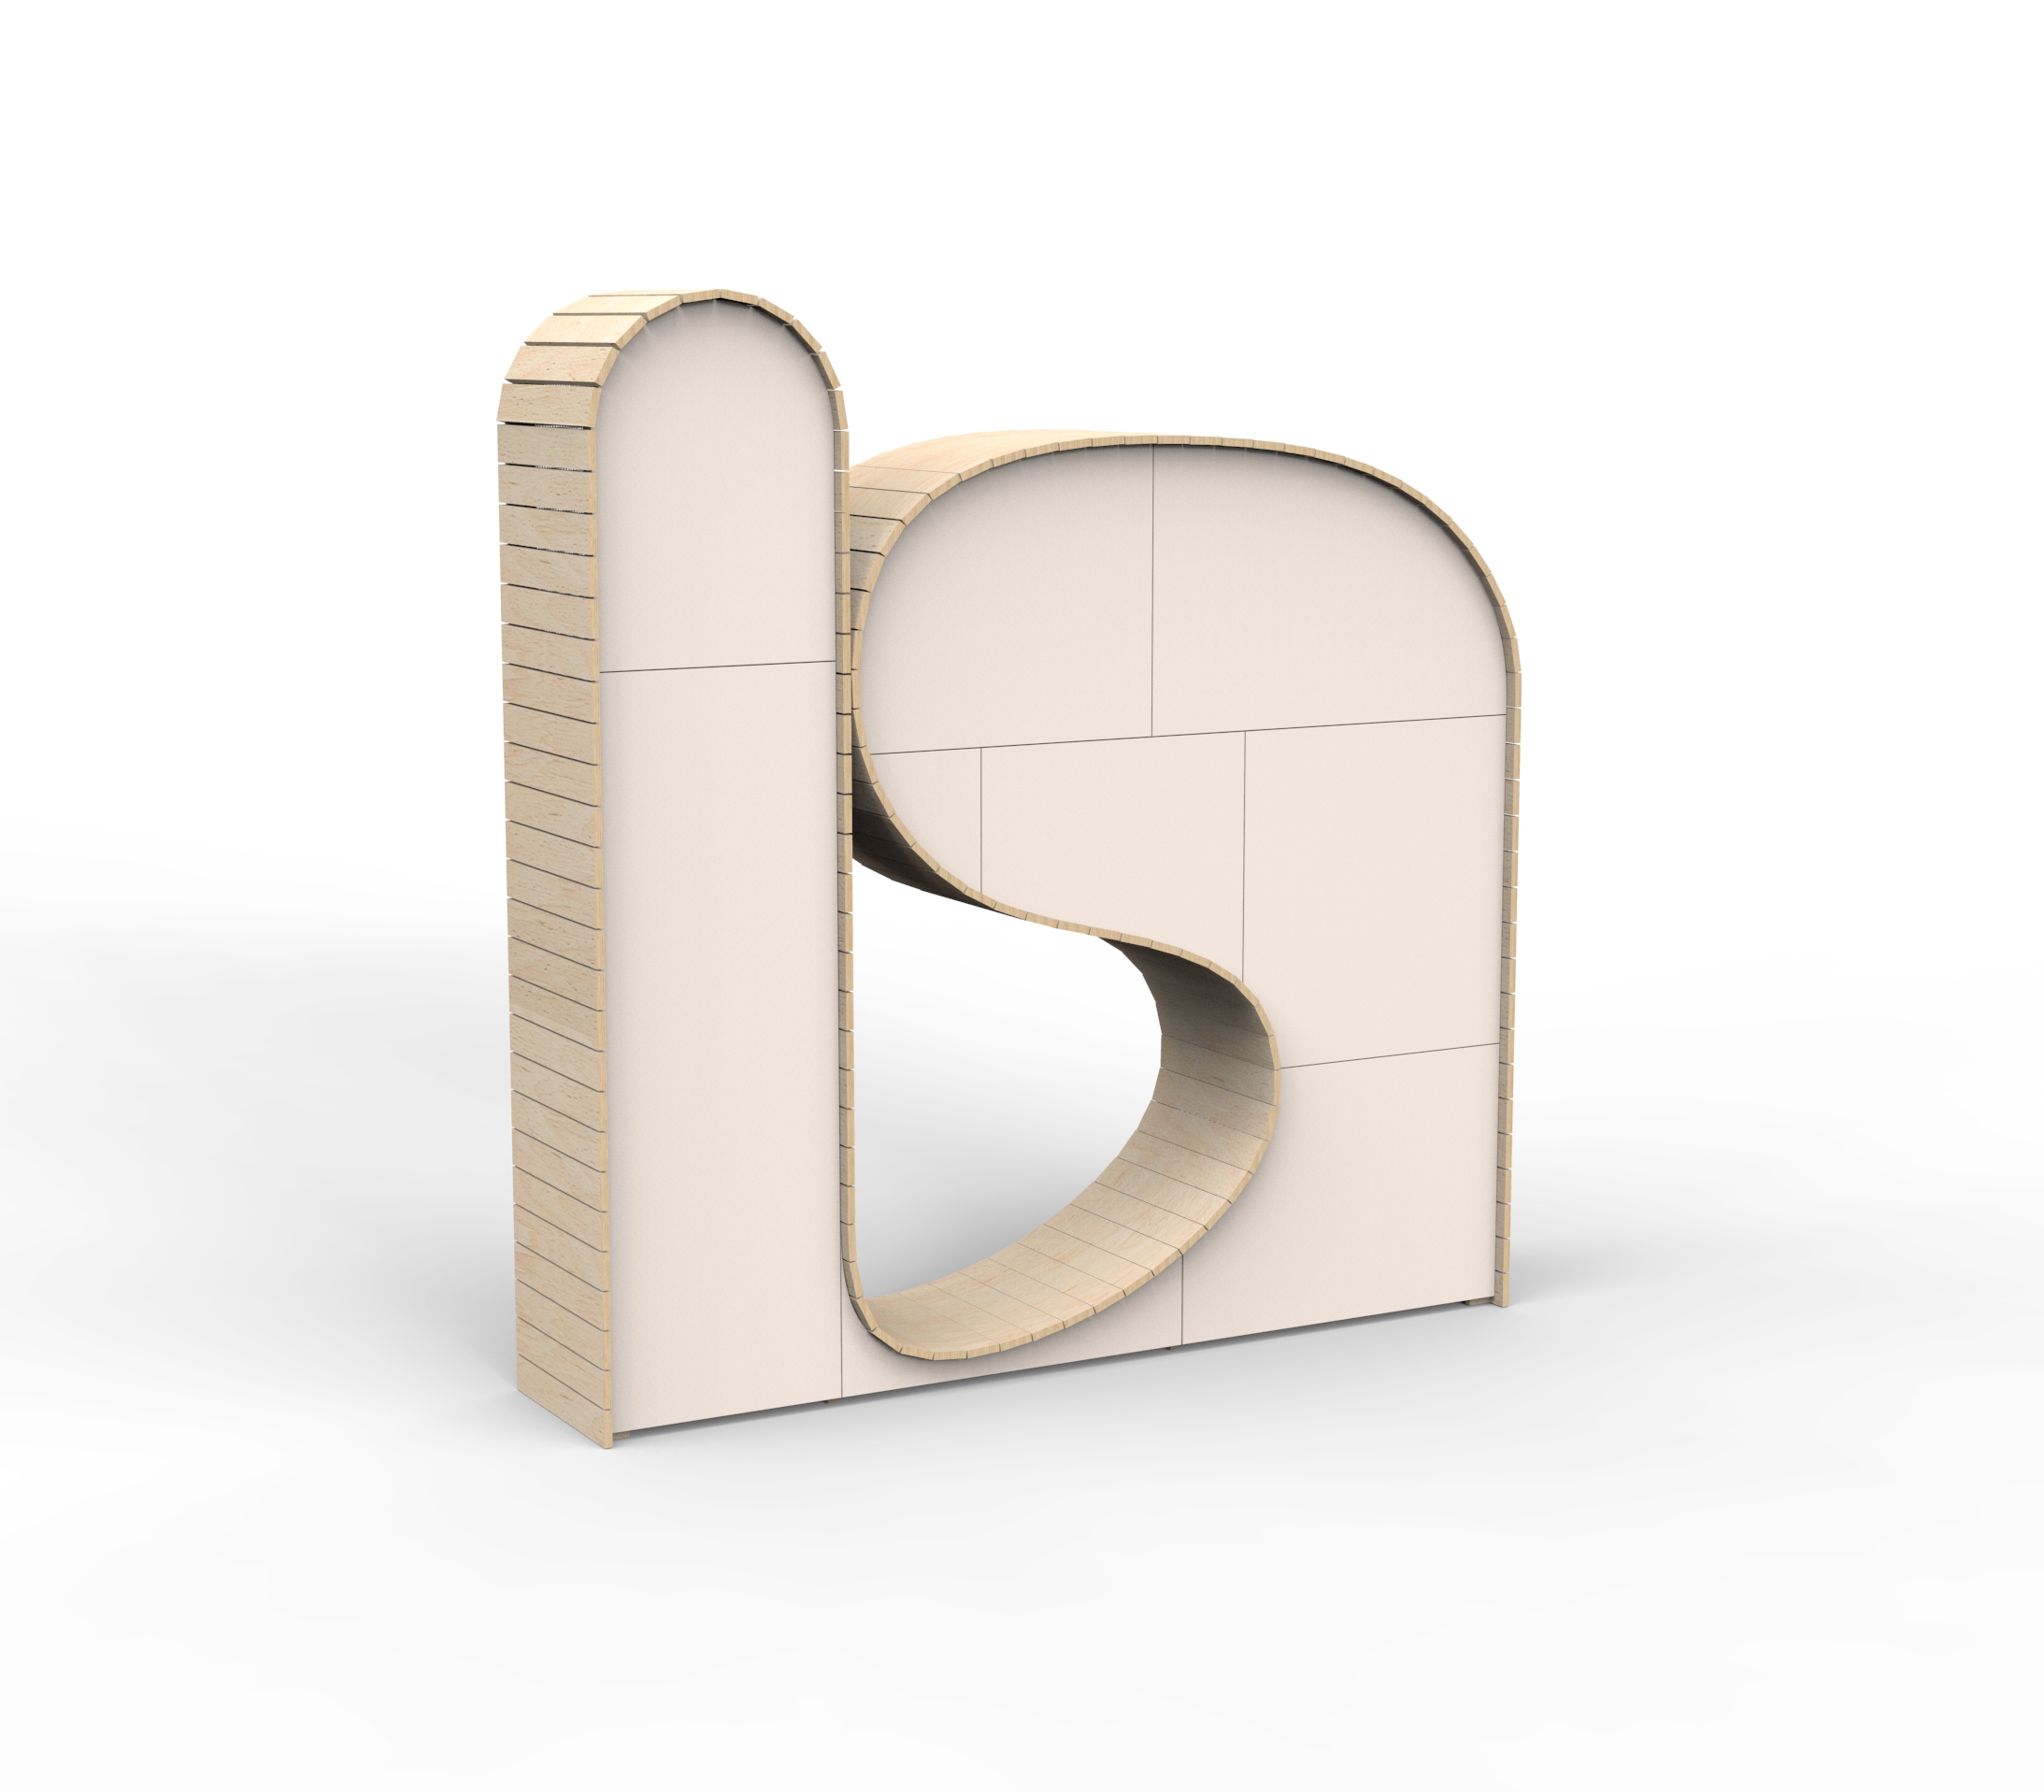 Wood Loop cabinet rendering 3D